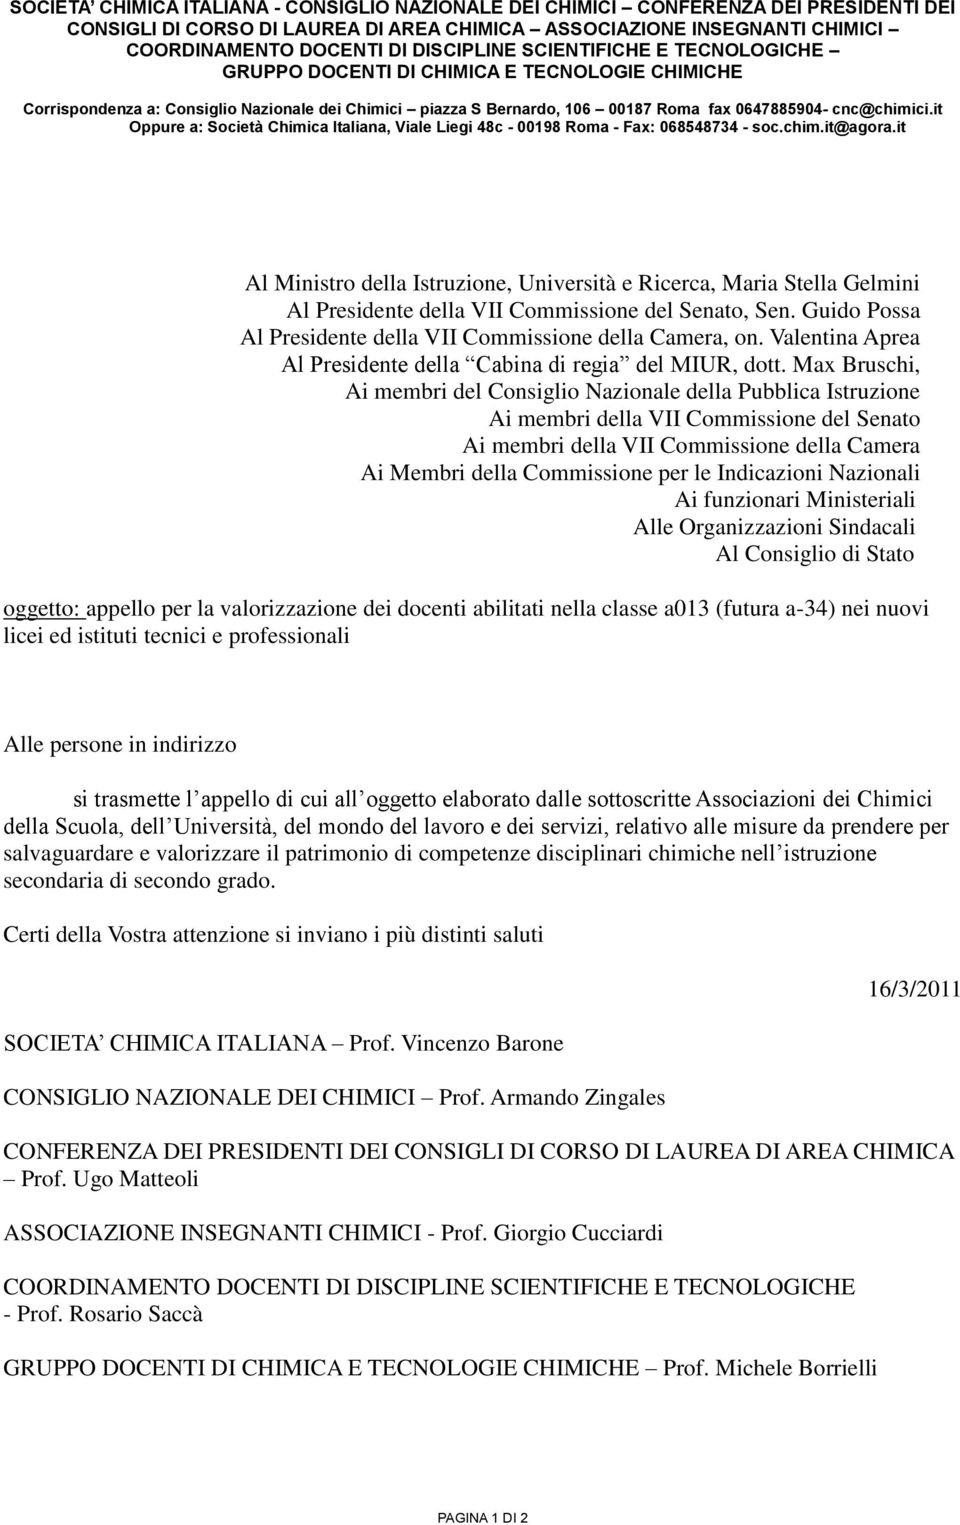 it Oppure a: Società Chimica Italiana, Viale Liegi 48c - 00198 Roma - Fax: 068548734 - soc.chim.it@agora.